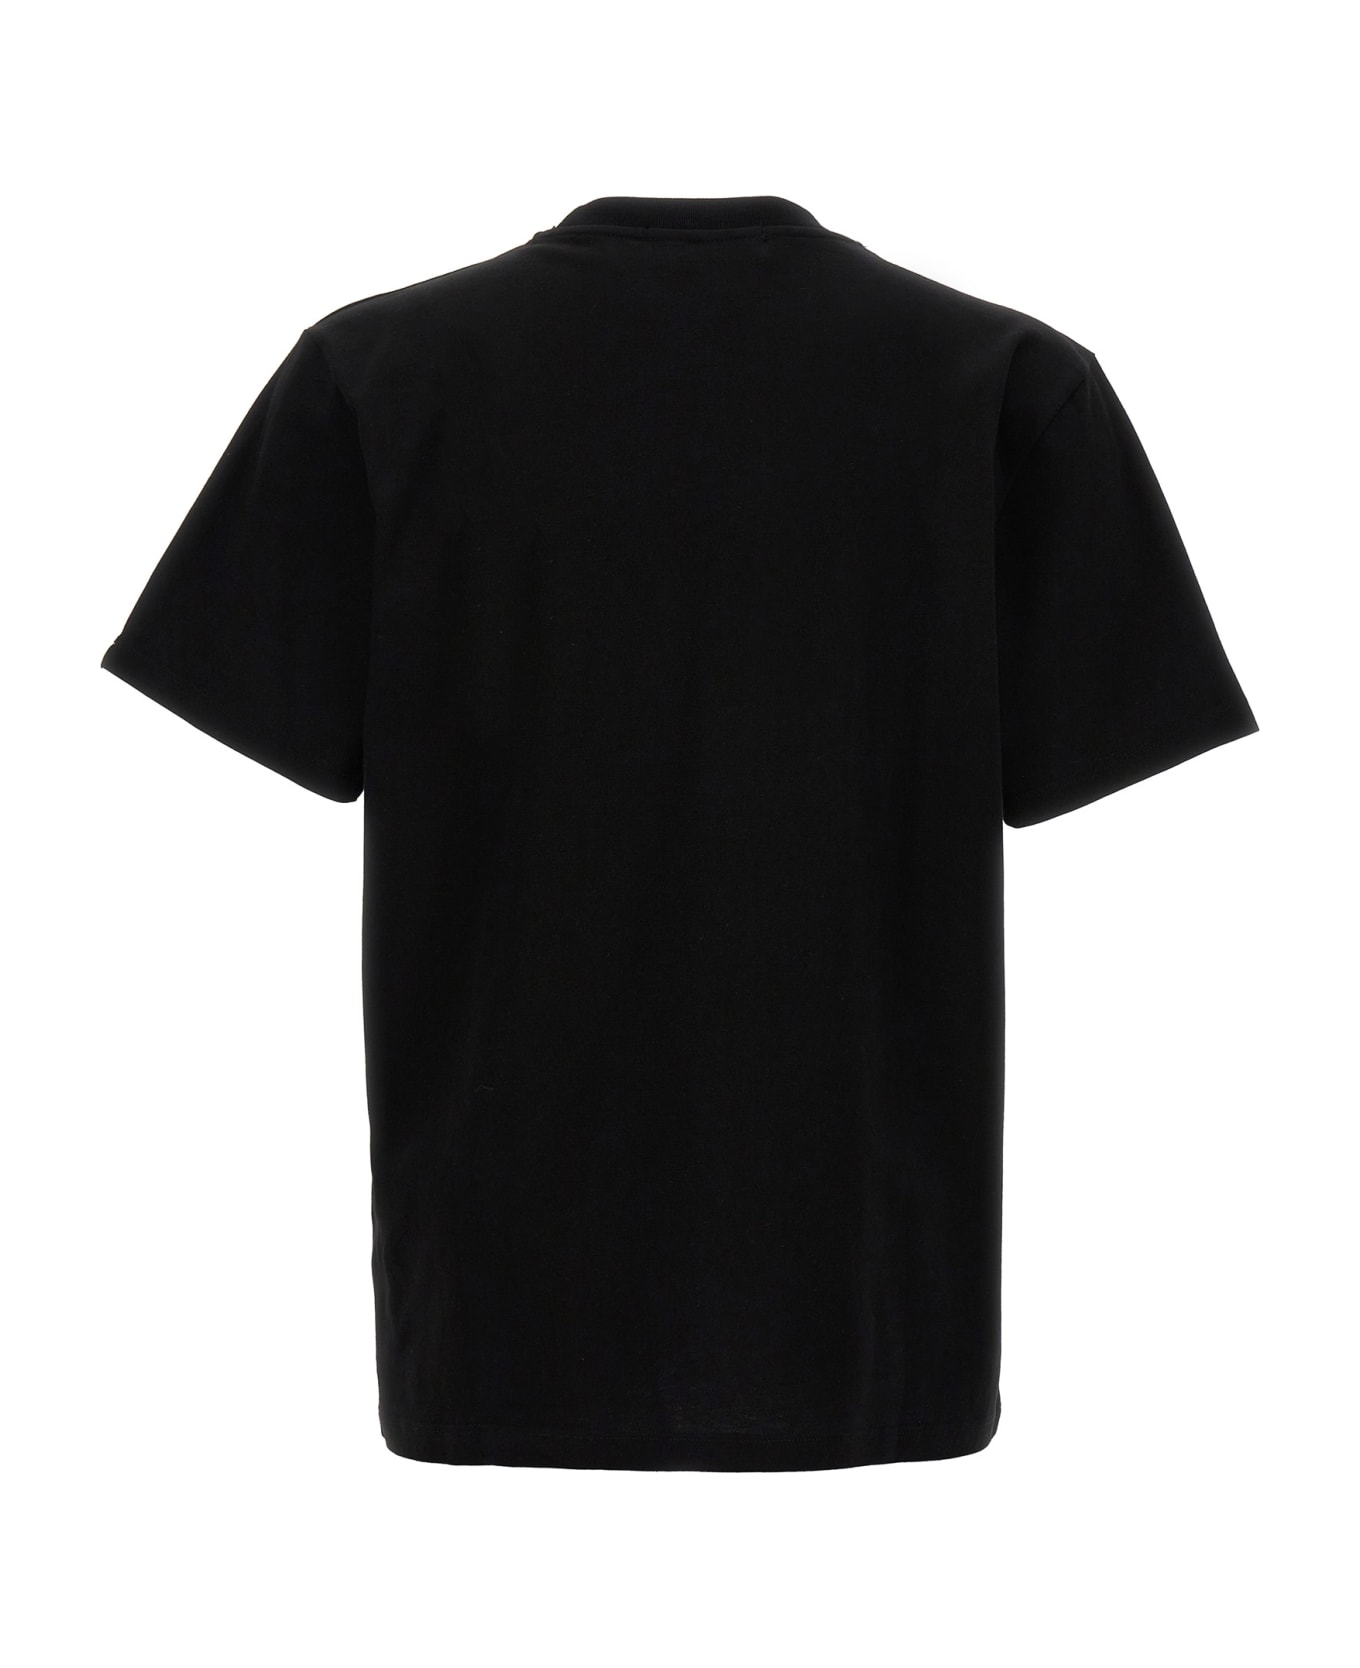 Barrow Printed T-shirt - Black   シャツ